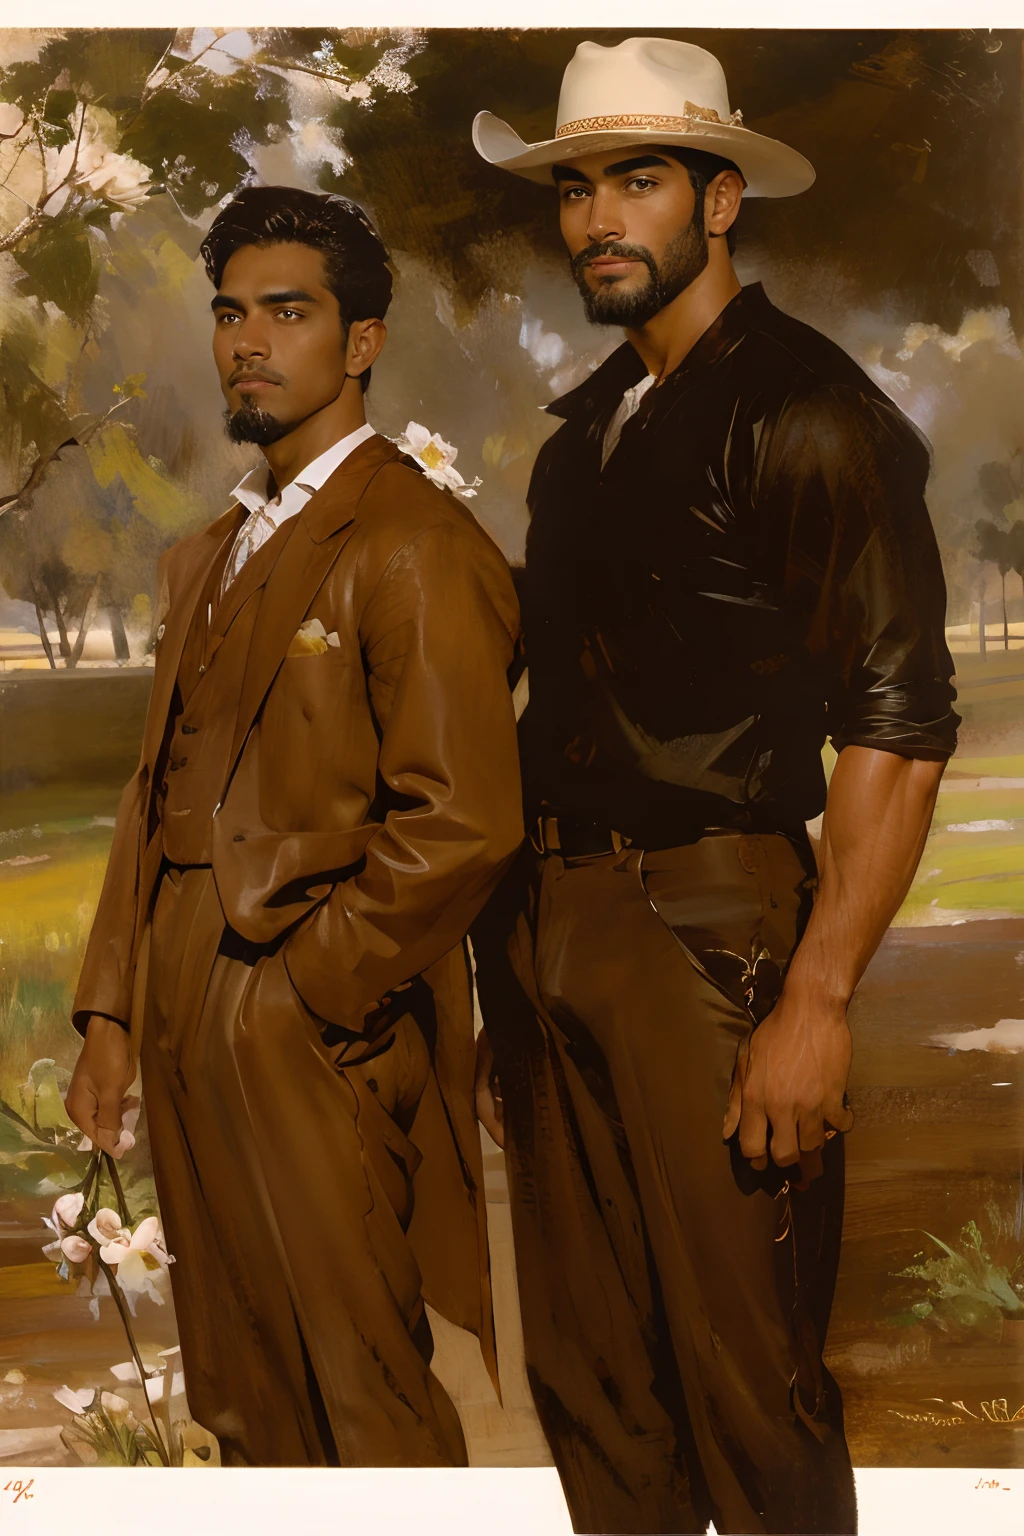 兩個男牛仔在田野上拿著野玫瑰, 棕色服装, 菲律賓裔美國人站在一位高大英俊的白人旁邊，他戴著牛仔帽、短髮和鬍鬚, 英俊的脸, 20 世纪 20 年代后期, 淺色臉部毛髮, 中長捲髮, 深棕色牛仔帽, 2个男孩, 中長髮